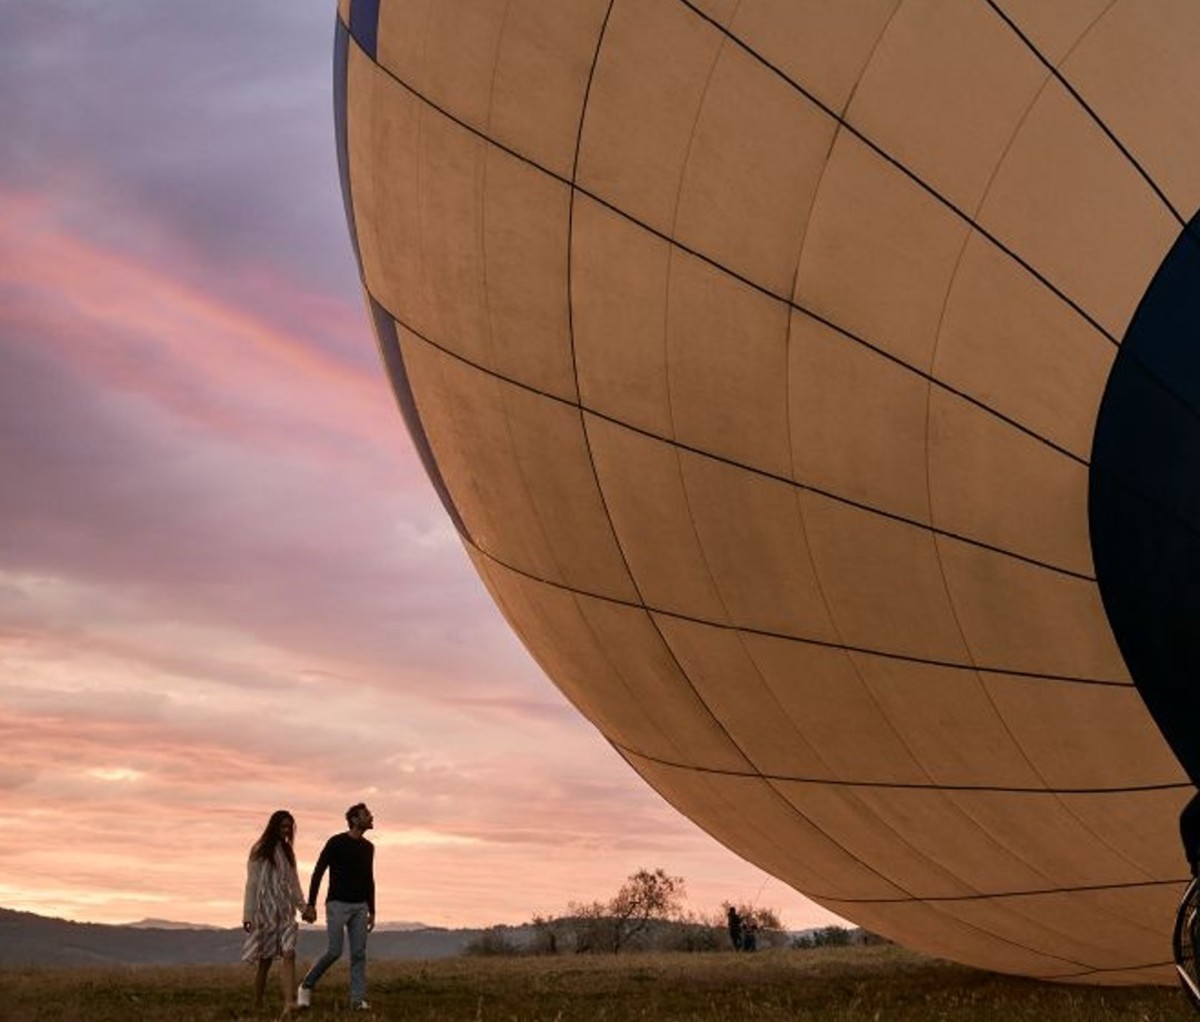 Man and woman holding hands walking toward deflating hot air balloon at sunset